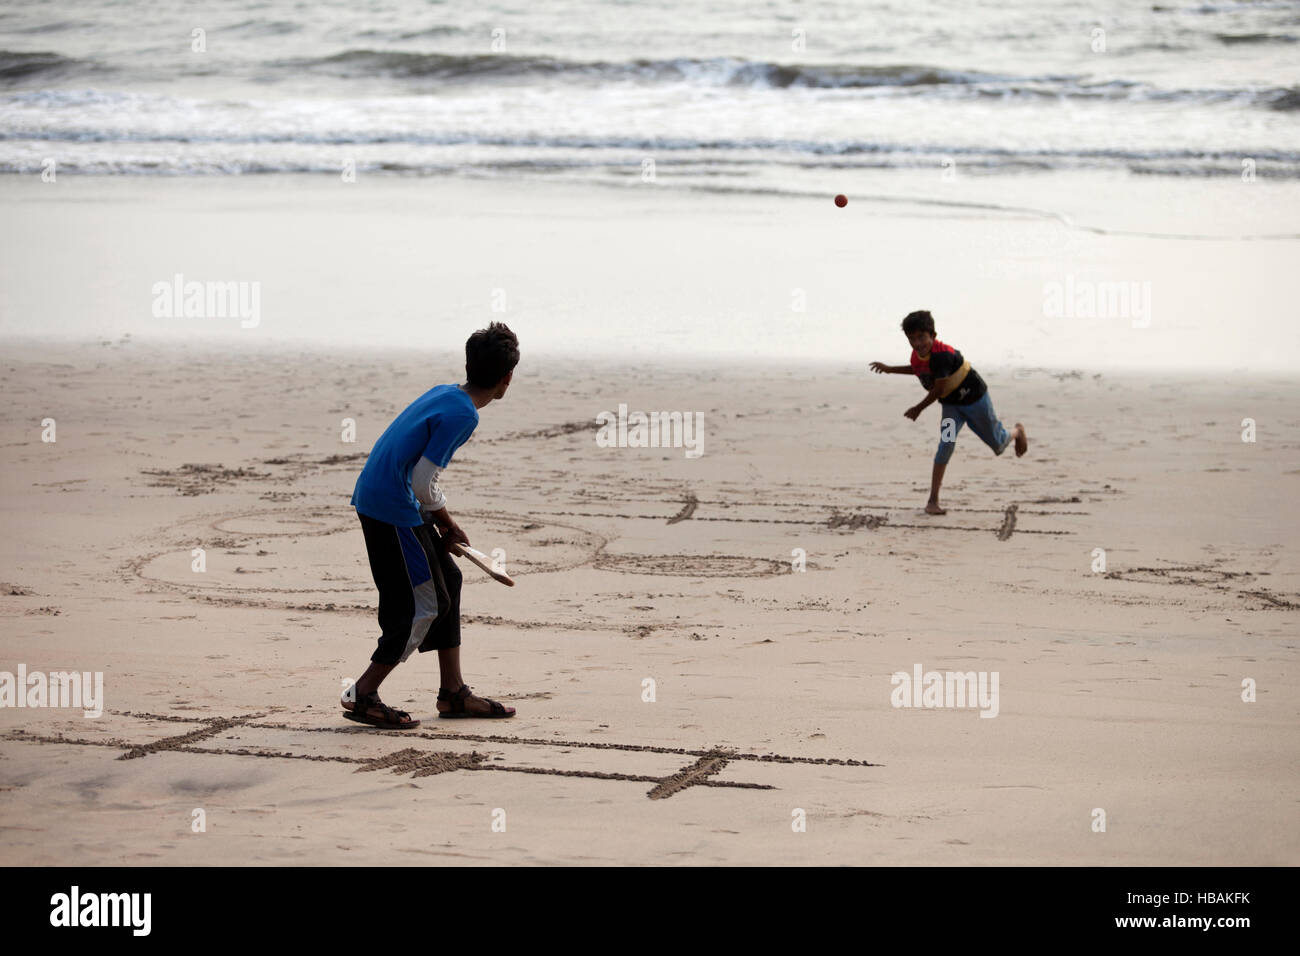 Boys playing cricket on beach, Diveagar, Maharashtra, India Stock Photo